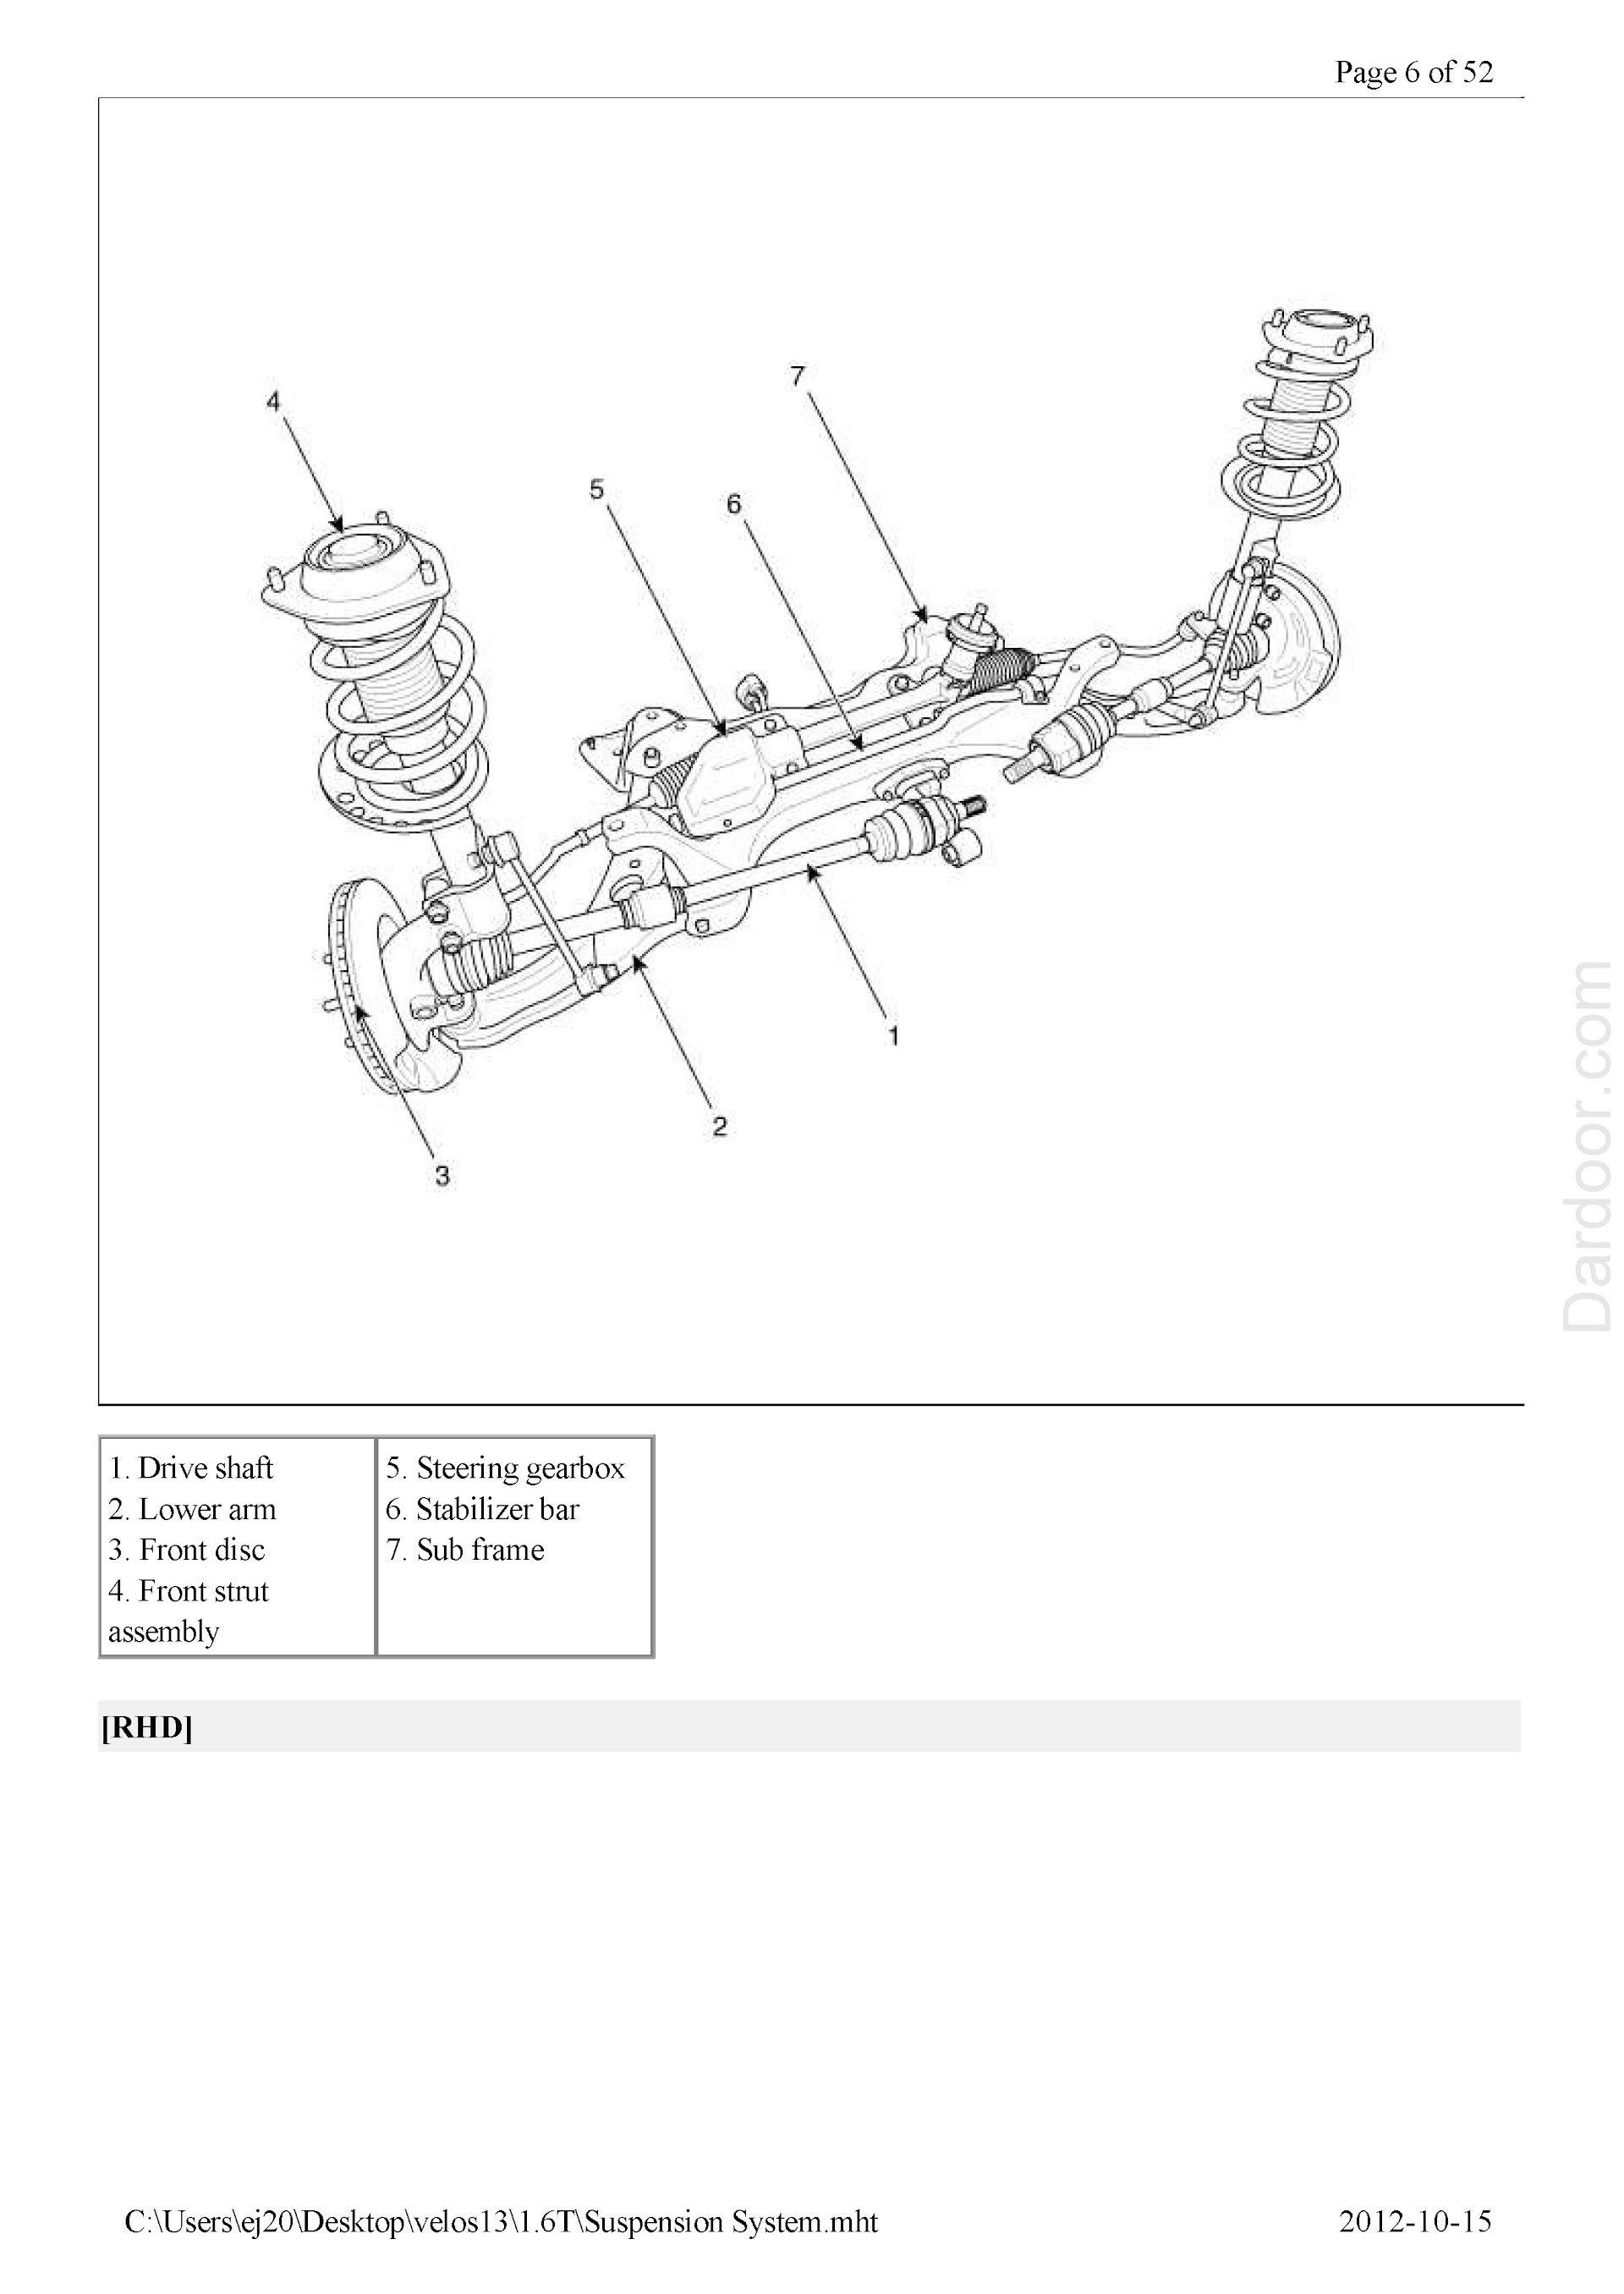 Hyundai Veloster Repair Manual, Suspension System